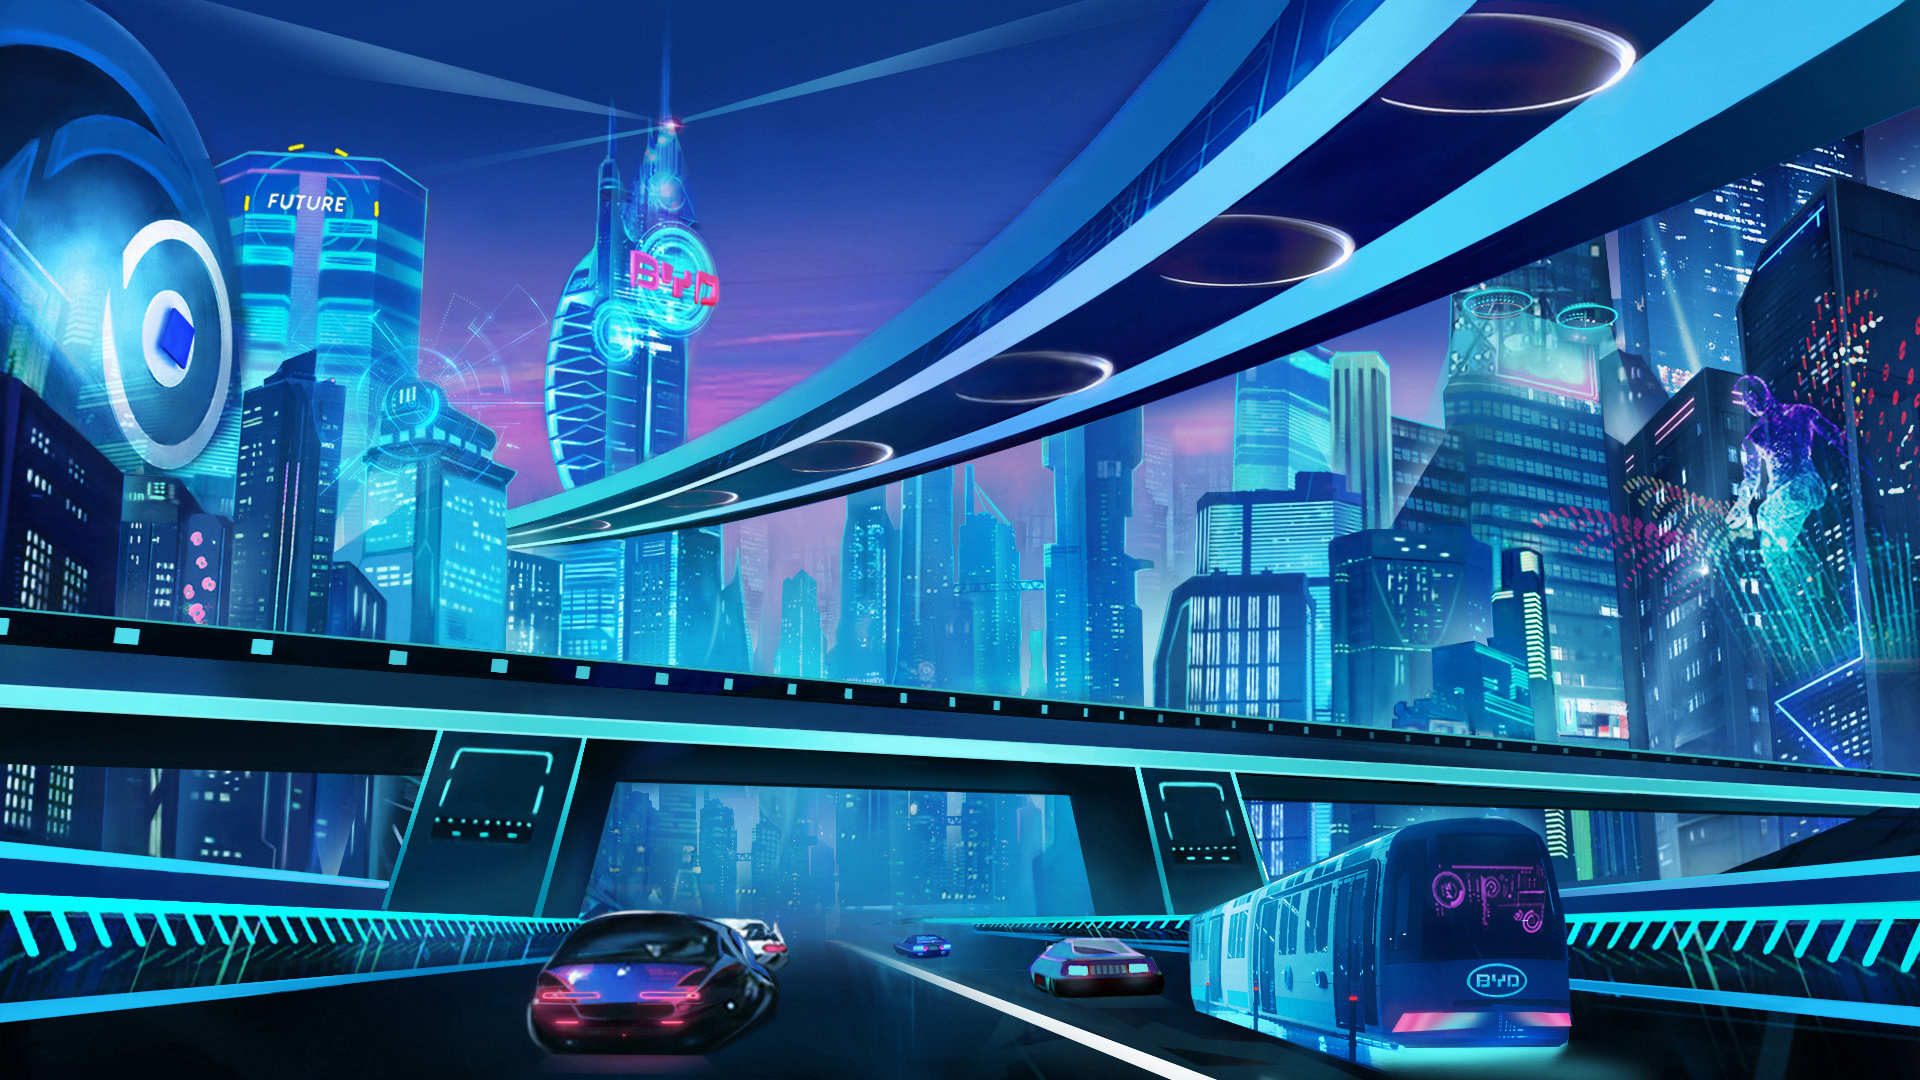 科幻画《未来的太空之城》作品赏析-露西学画画